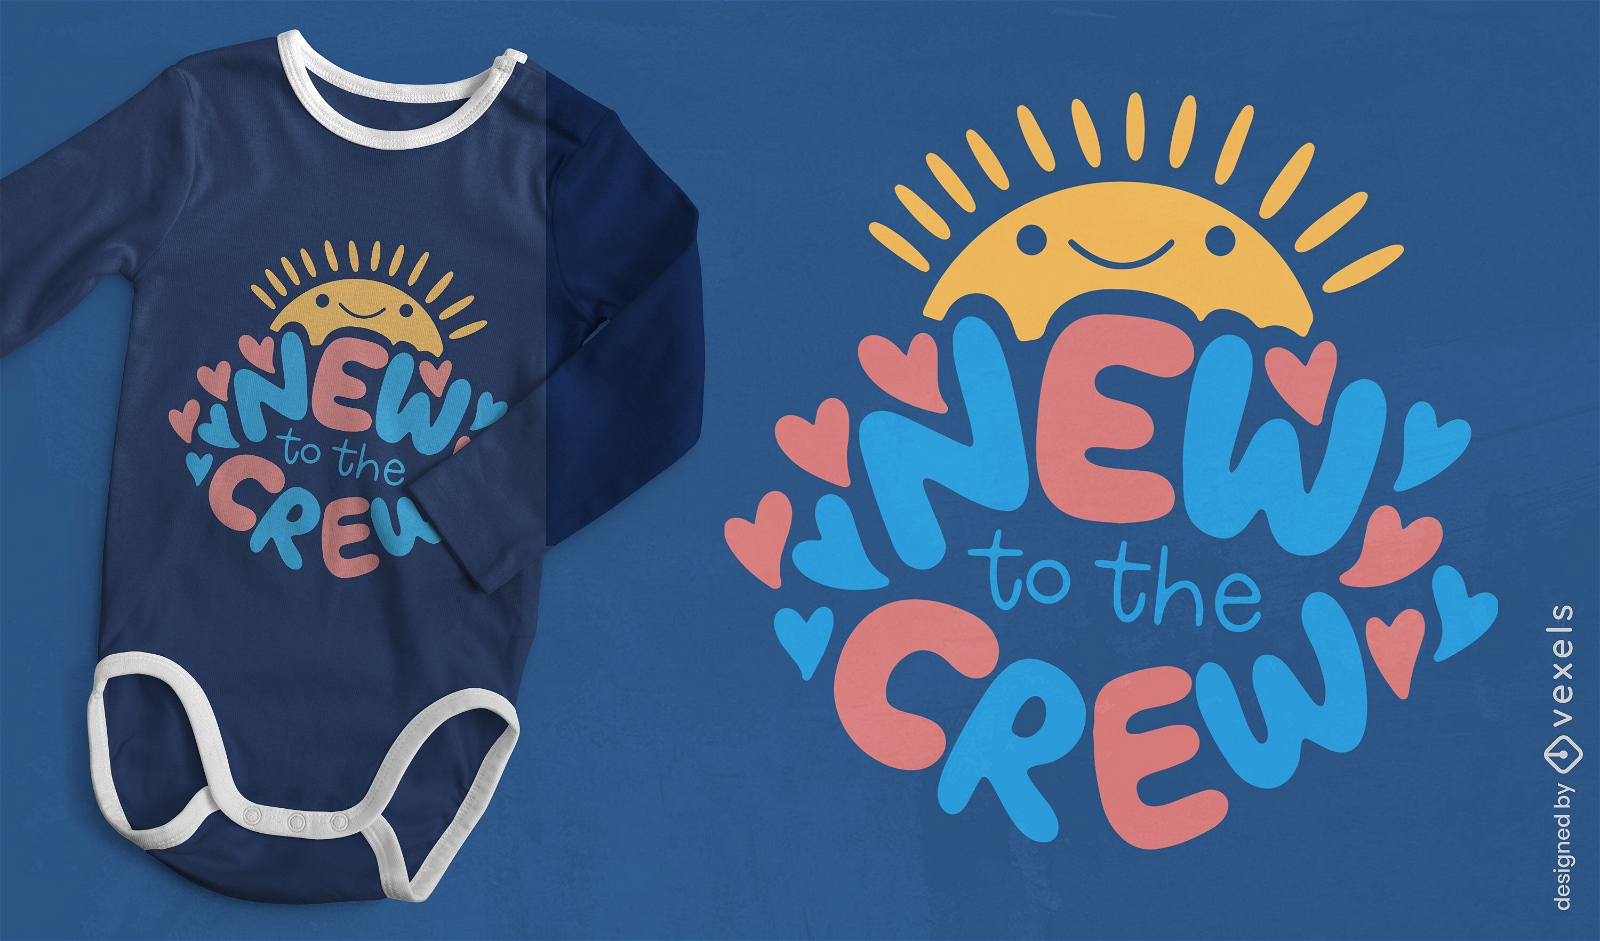 Novo no design de camiseta com citação de bebê da tripulação